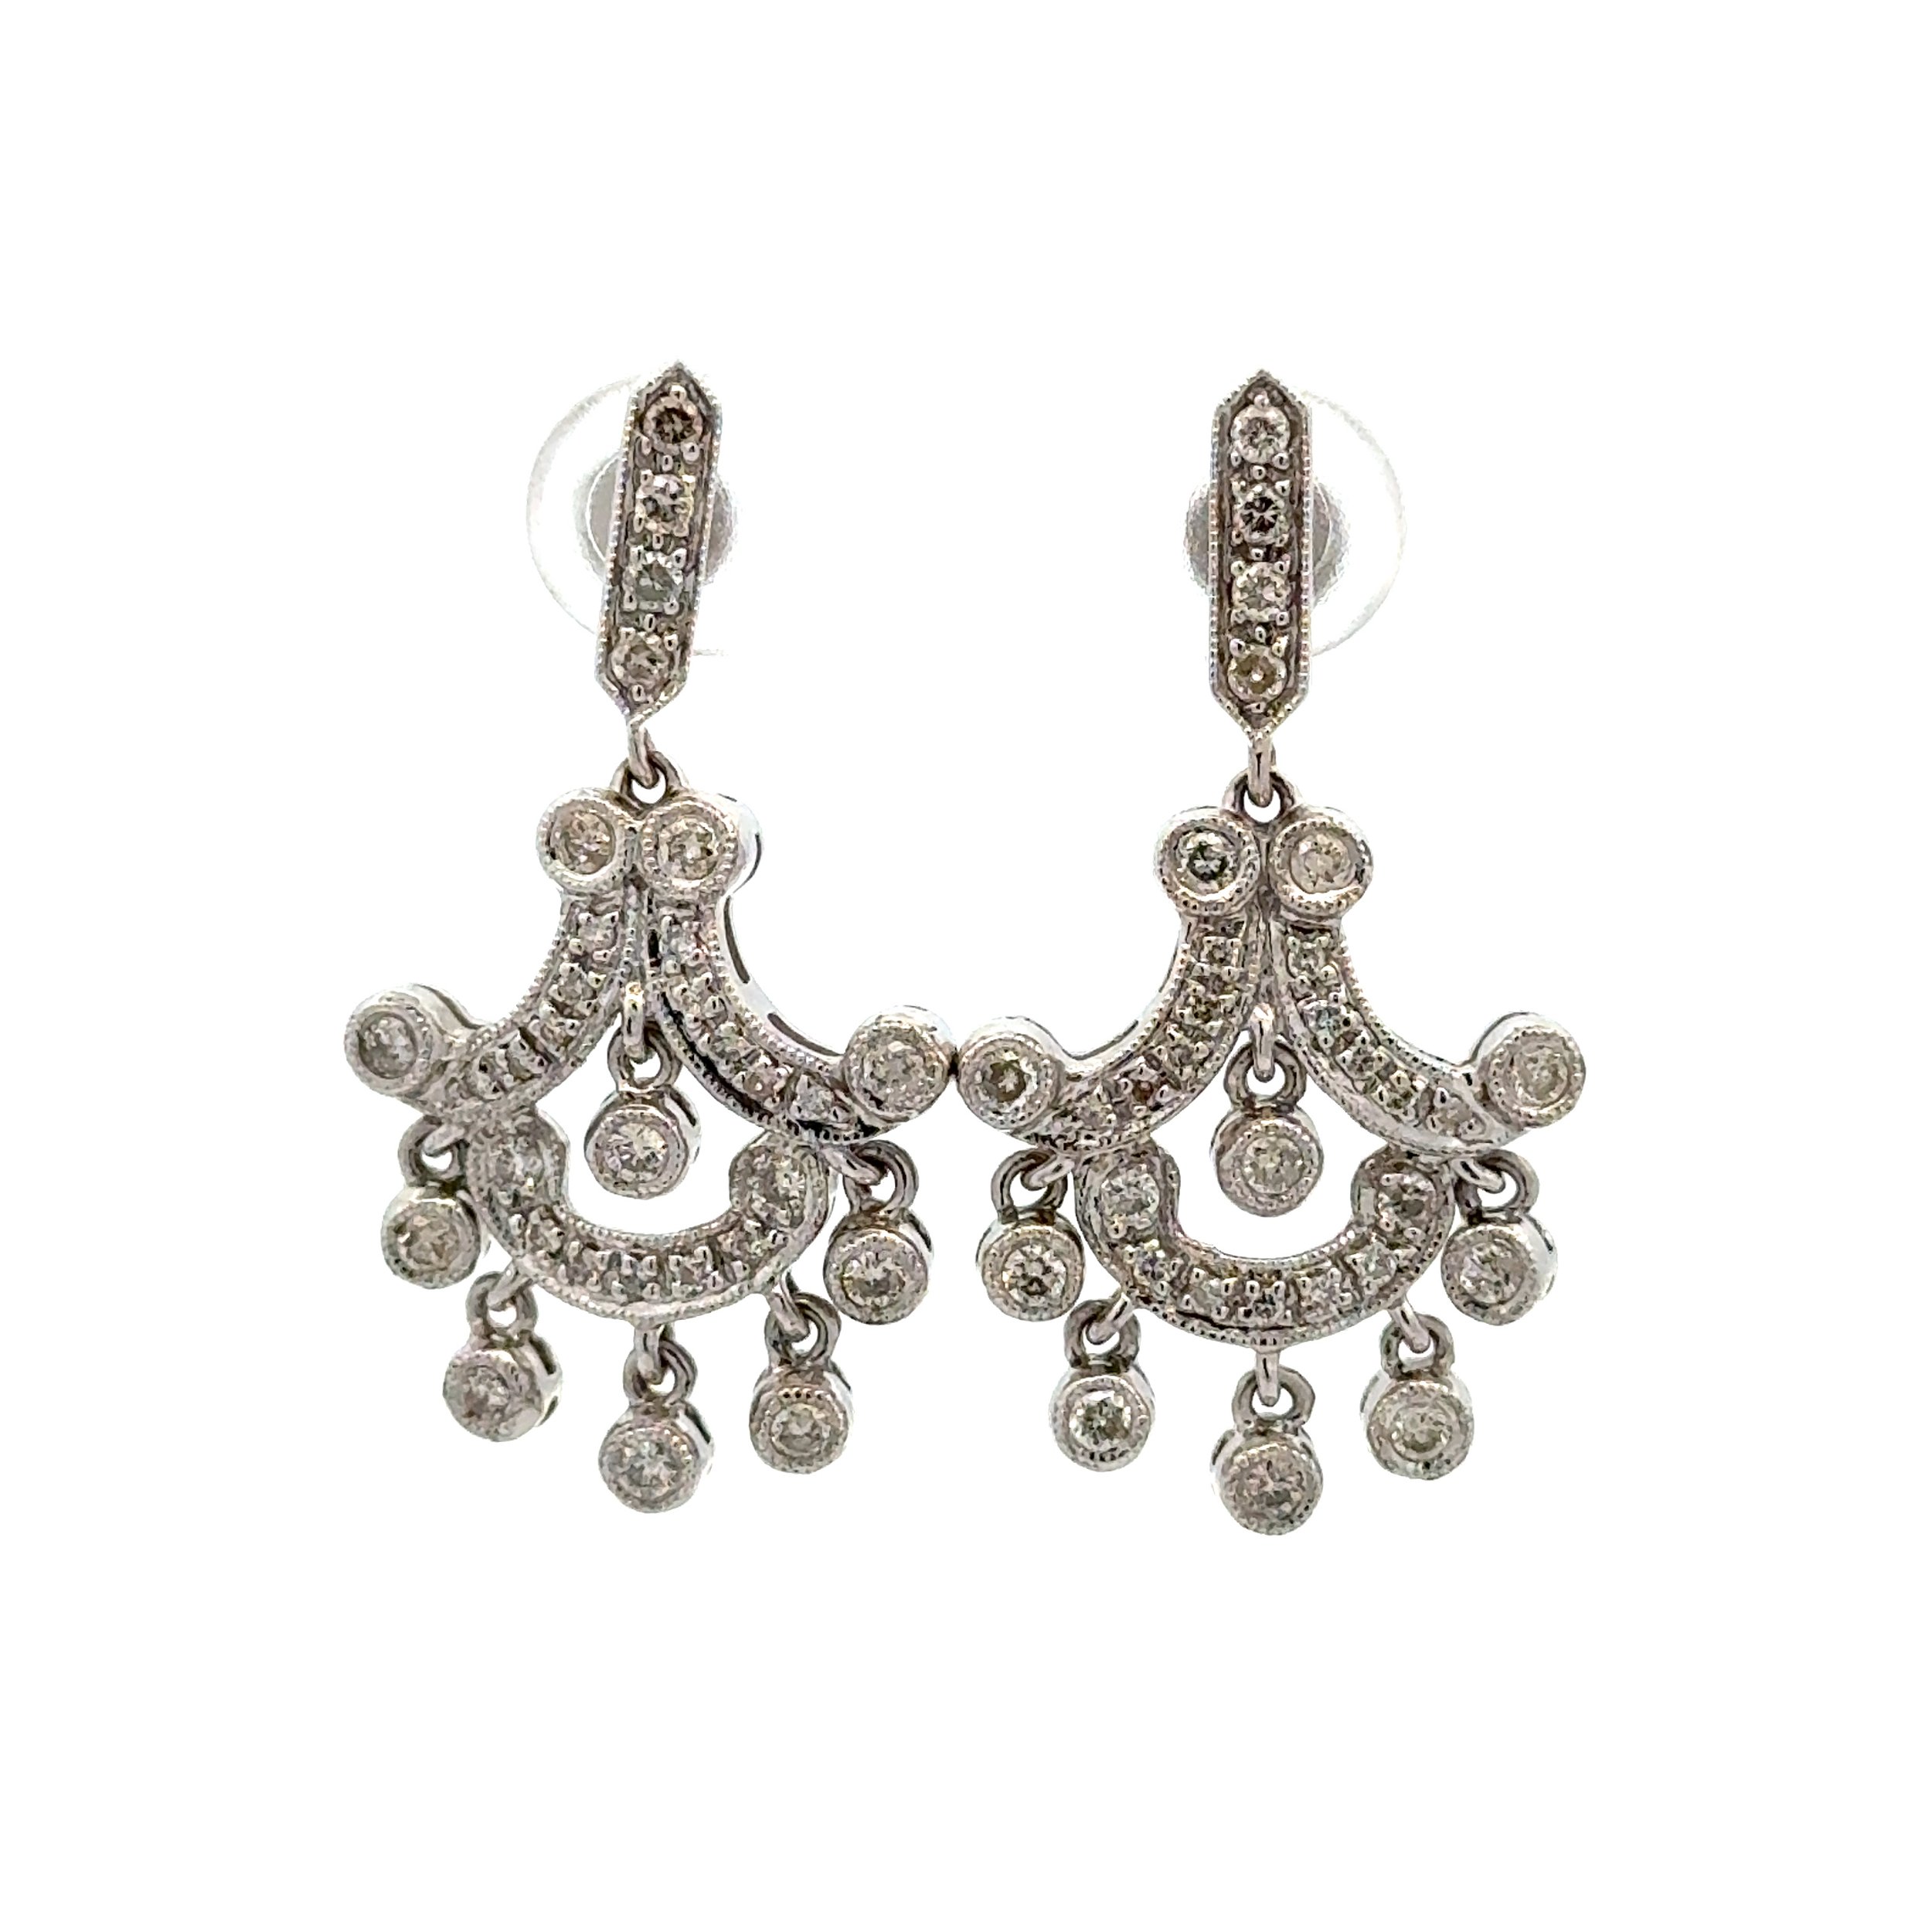 14K WG Art Deco Style Chandelier 1.15tcw RBC Diamond Earrings 6.5g, 1.25"